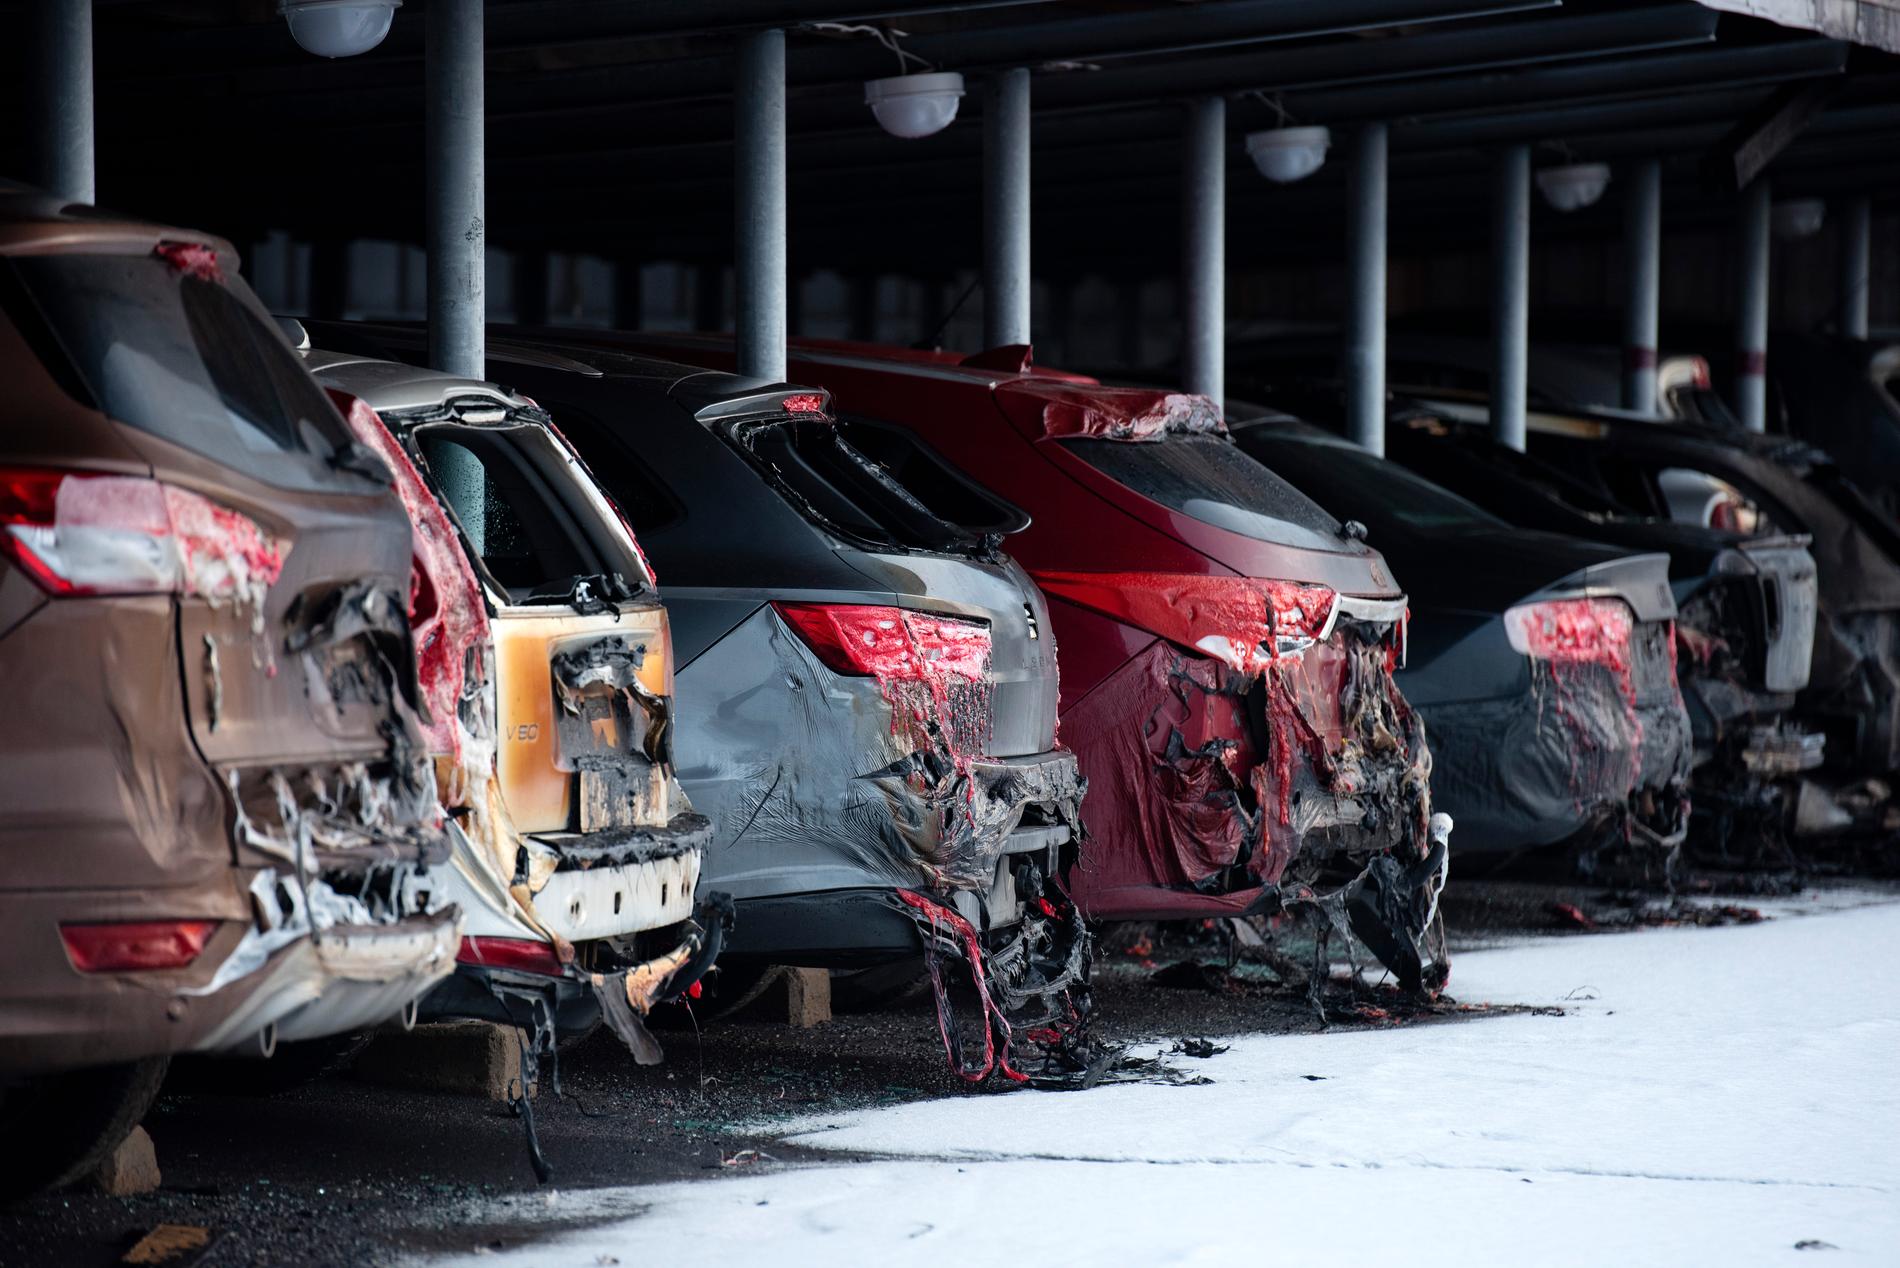 Ett 40-tal bilar förstördes i branden i stadsdelen Marieområdet i Umeå den 14 februari i år.